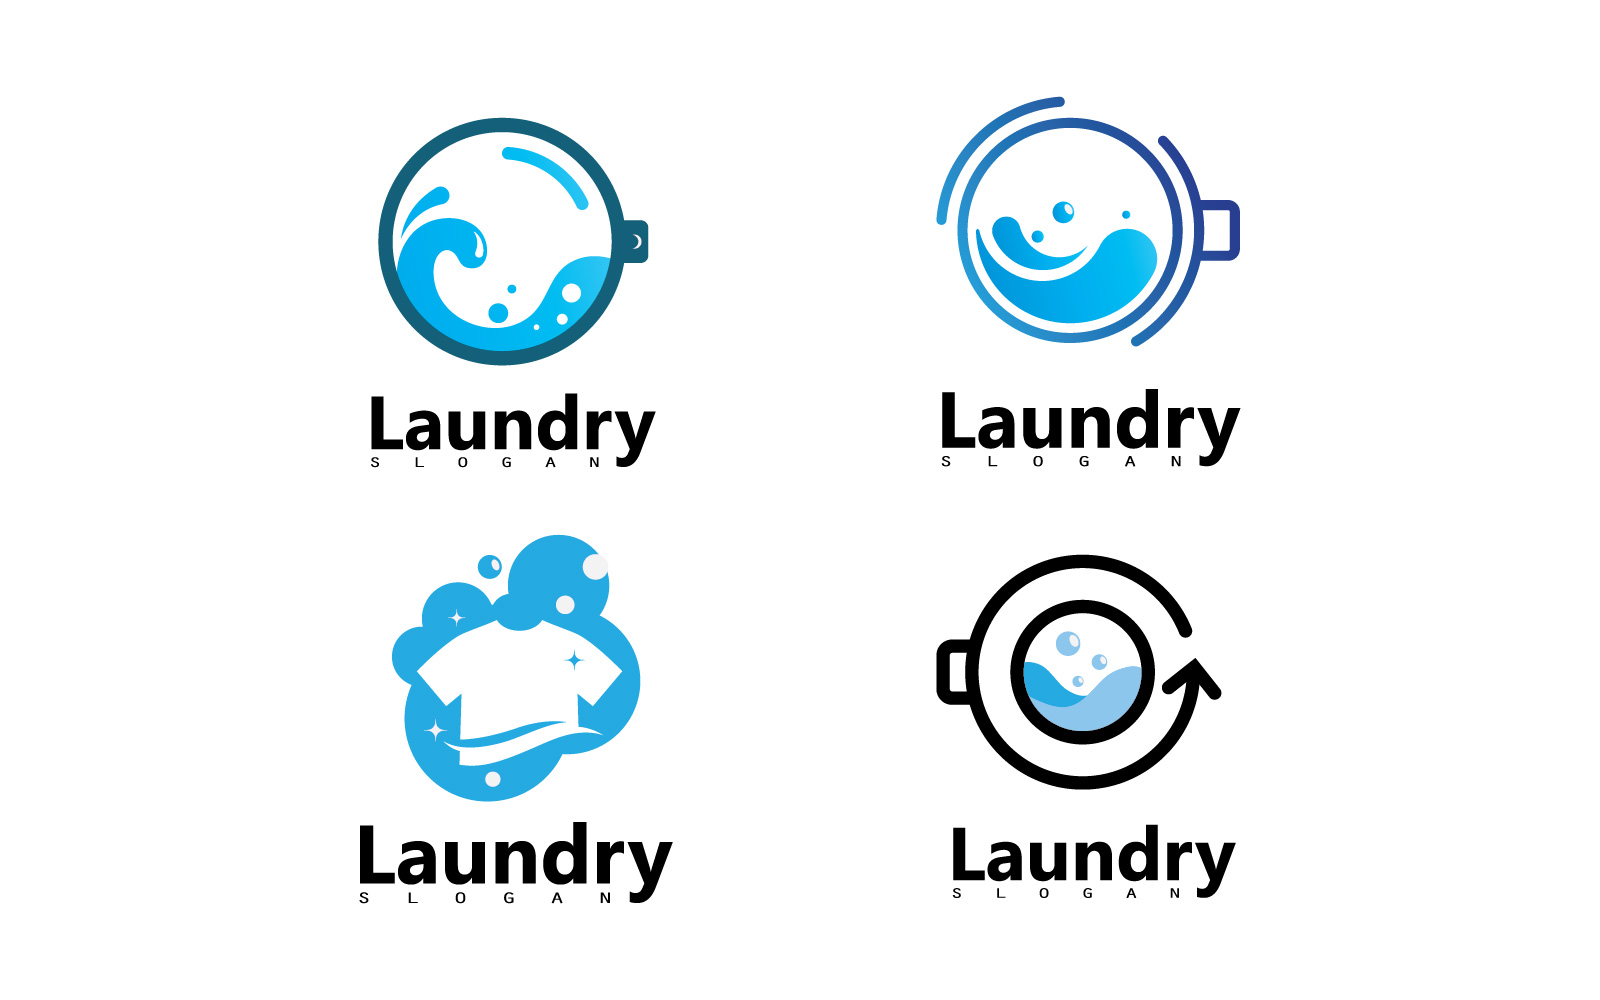 Washing machine laundry icon logo design V10